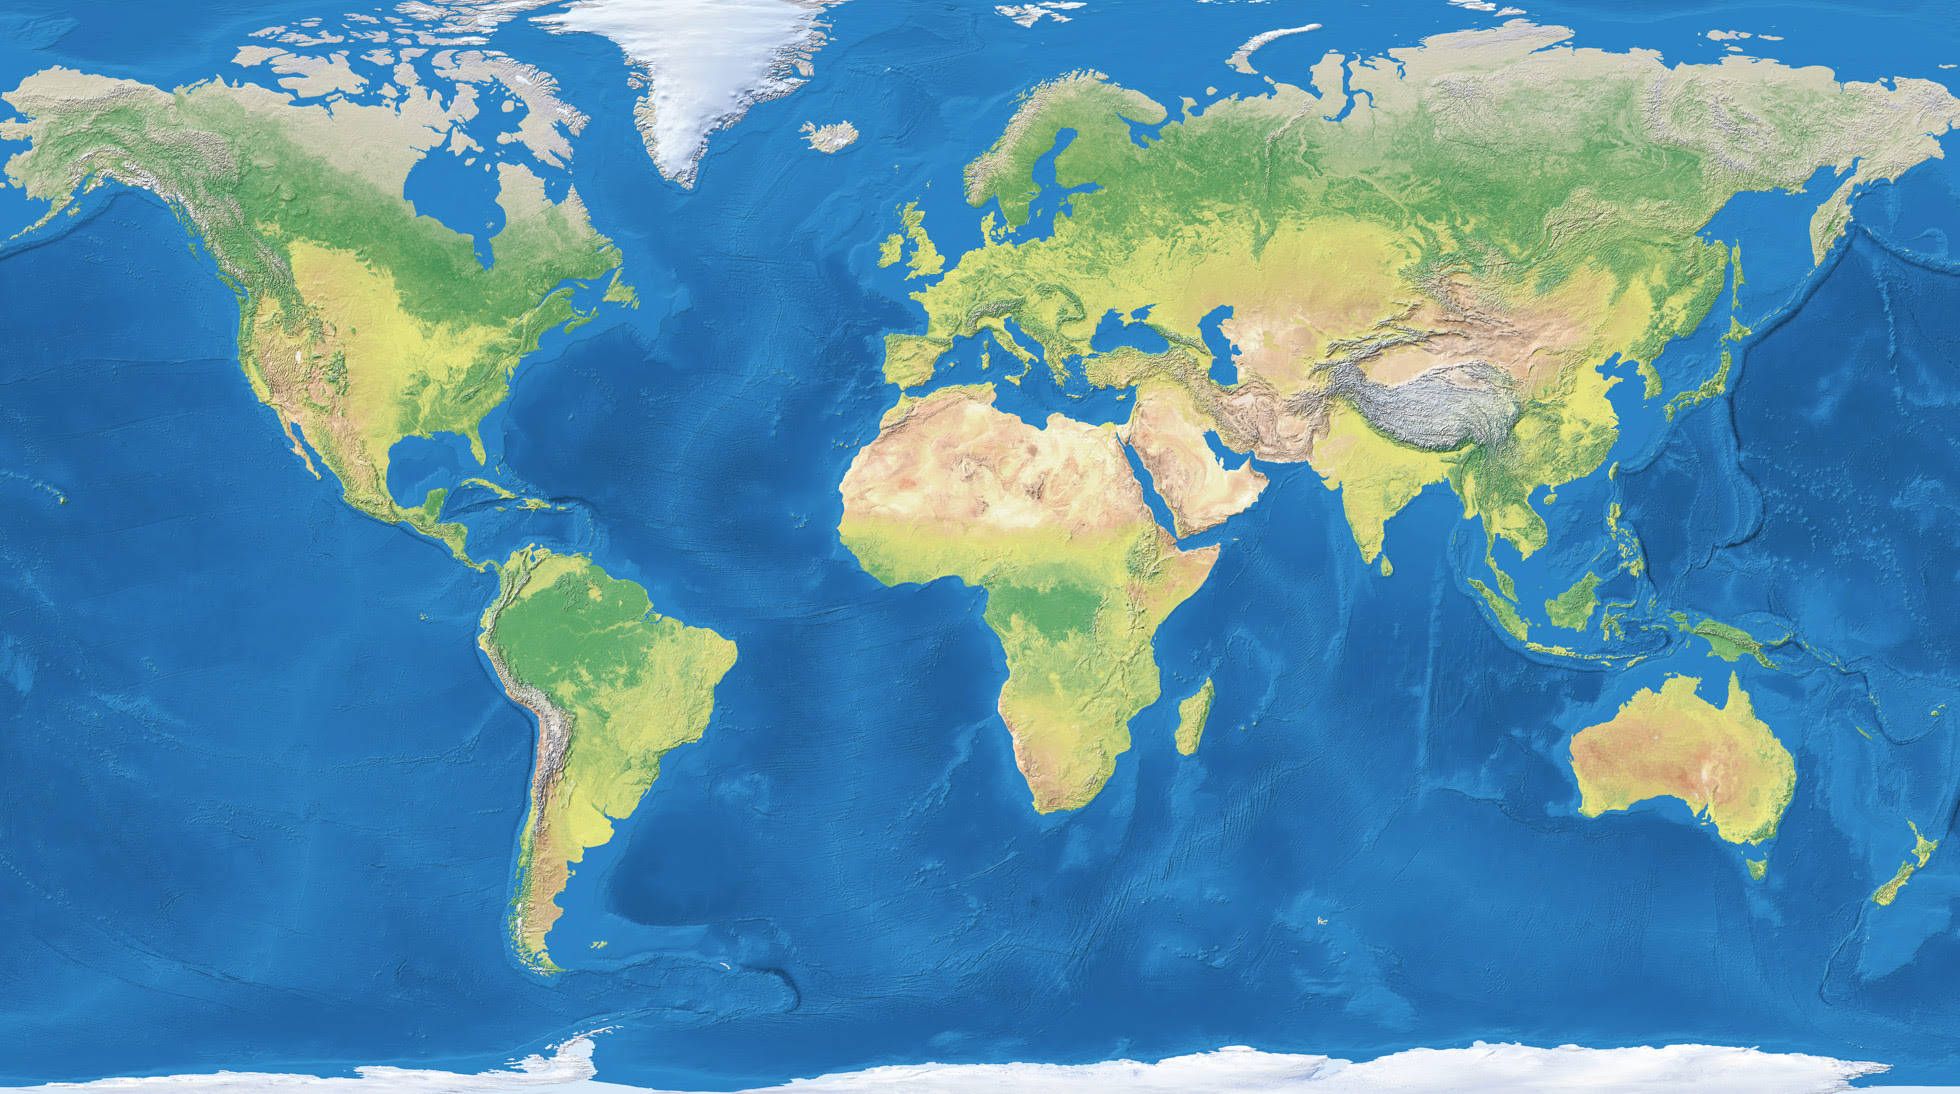 Flat Map Of World World Maps